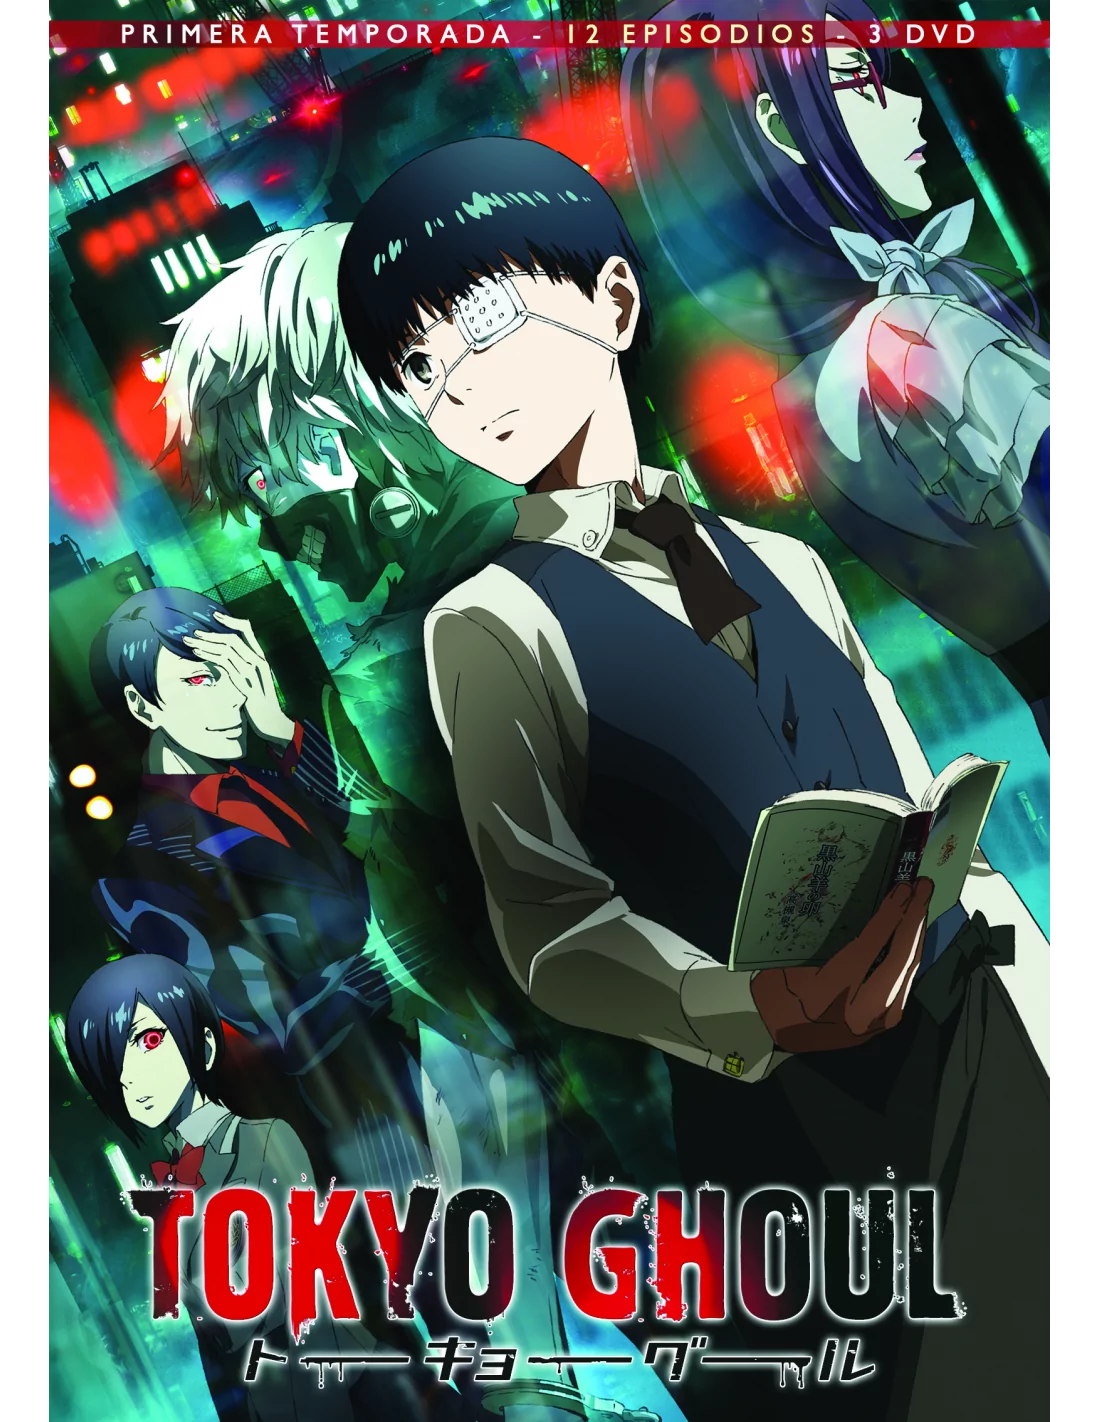 En la madrugada Haz un experimento Investigación Tokyo Ghoul - Primera Temporada [12 episodios - 3 DVD]